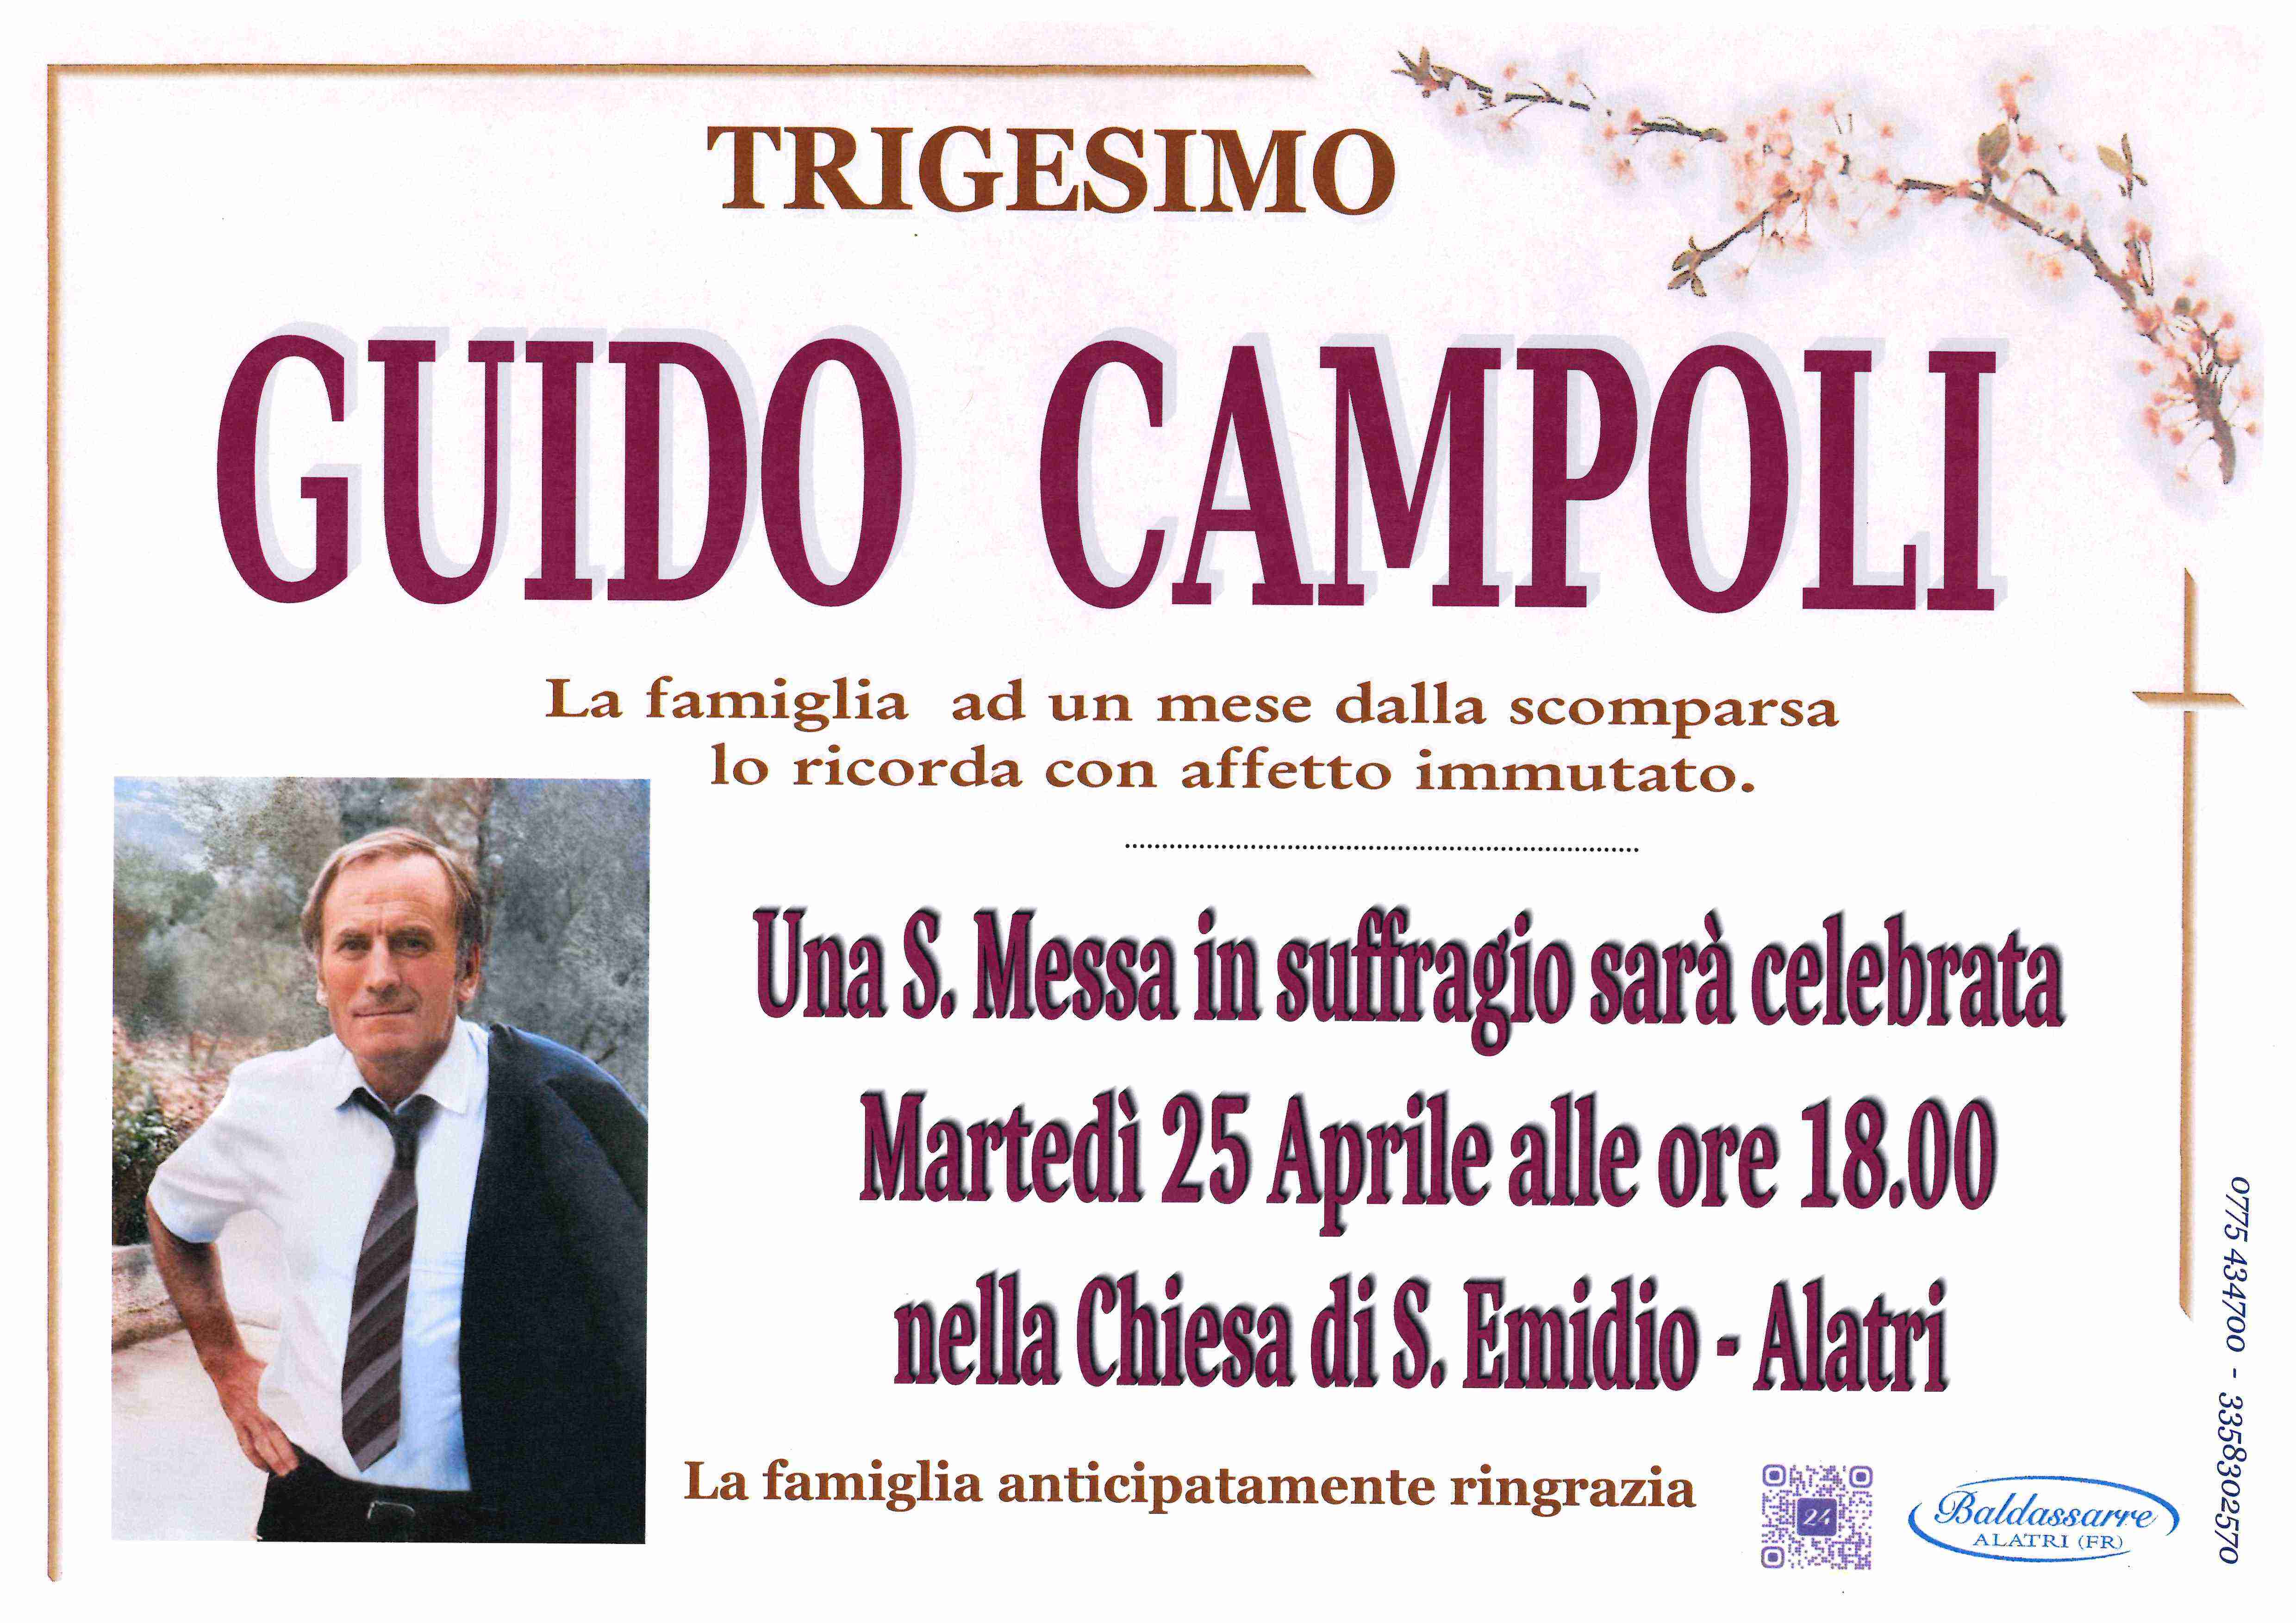 Guido Campoli